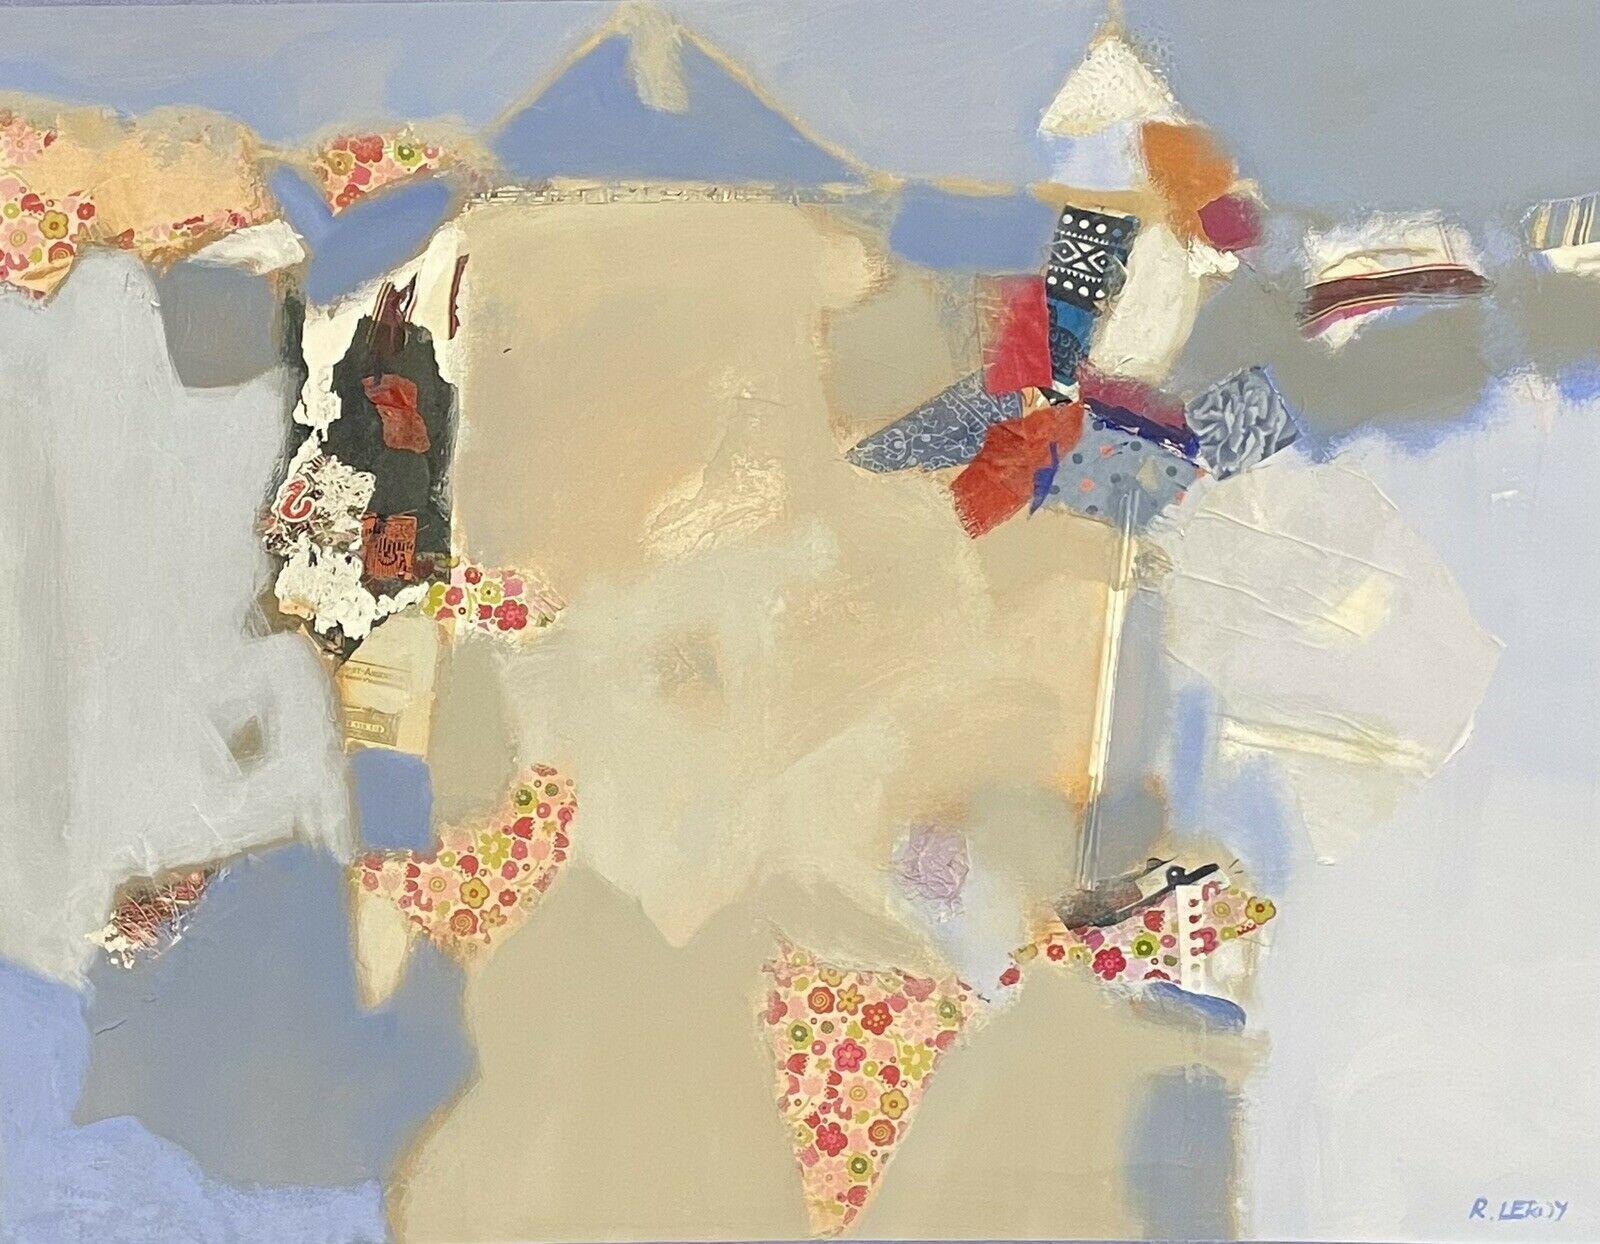 Abstract Painting R.Leroy - Grande tapisserie de cubiste abstraite contemporaine française - RENE LEROY (B.1932)